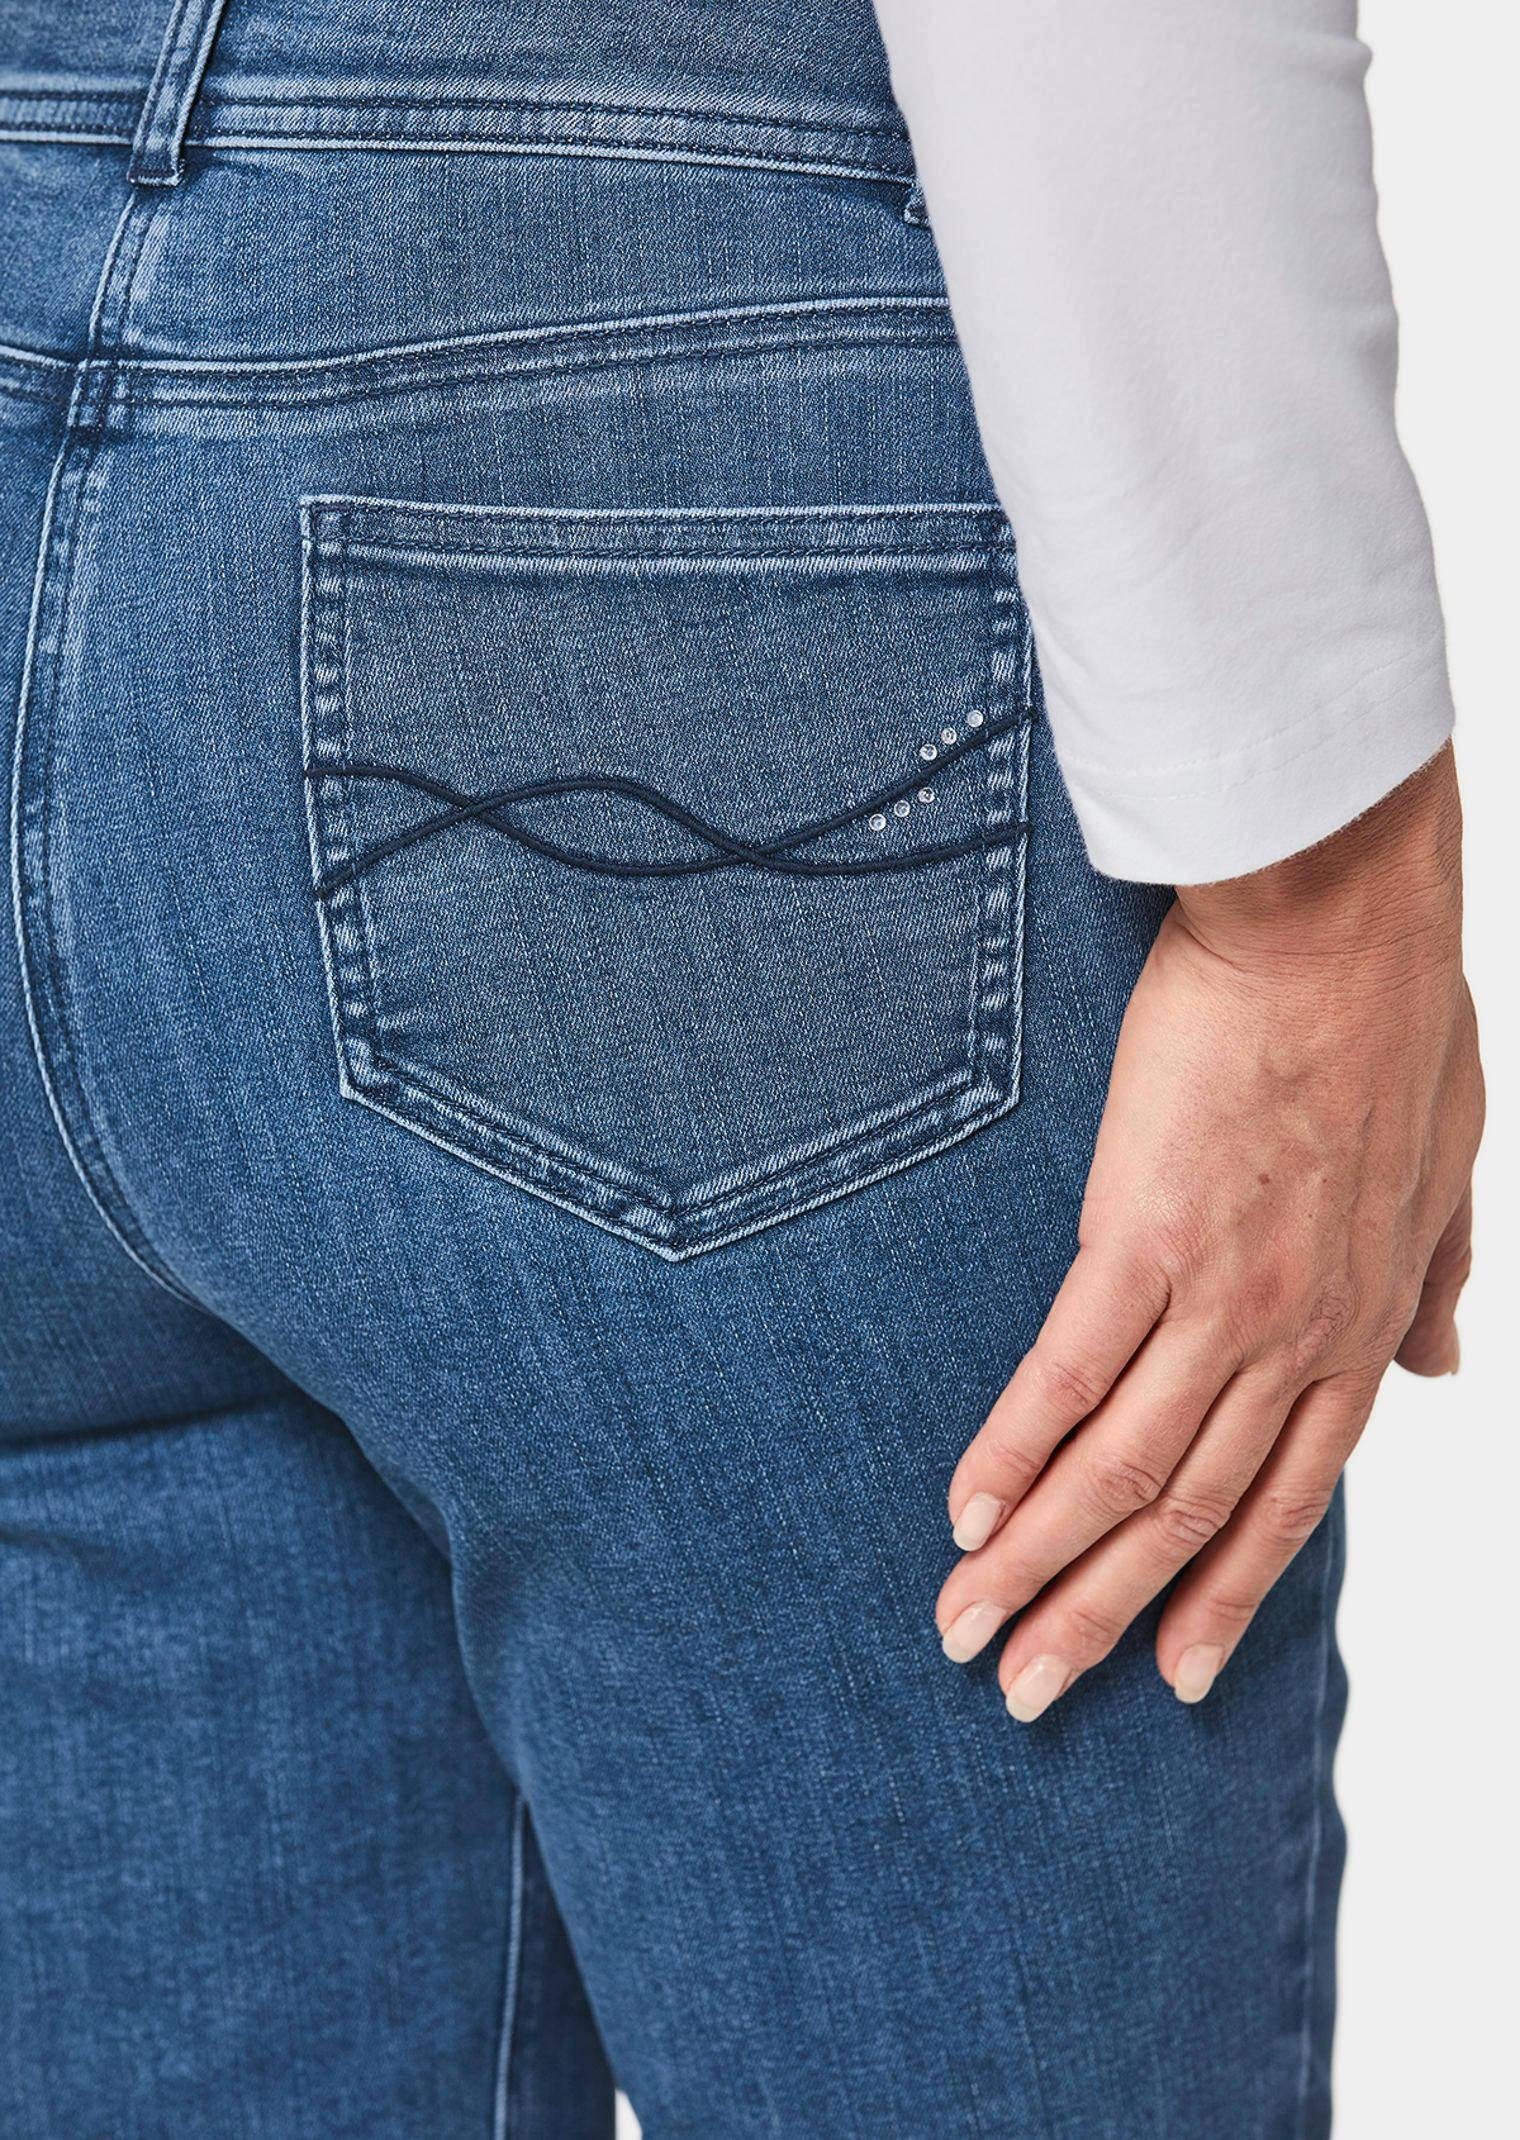 Jeans Hose marine mit Bauchweg-Effekt Bequeme Superbequeme GOLDNER